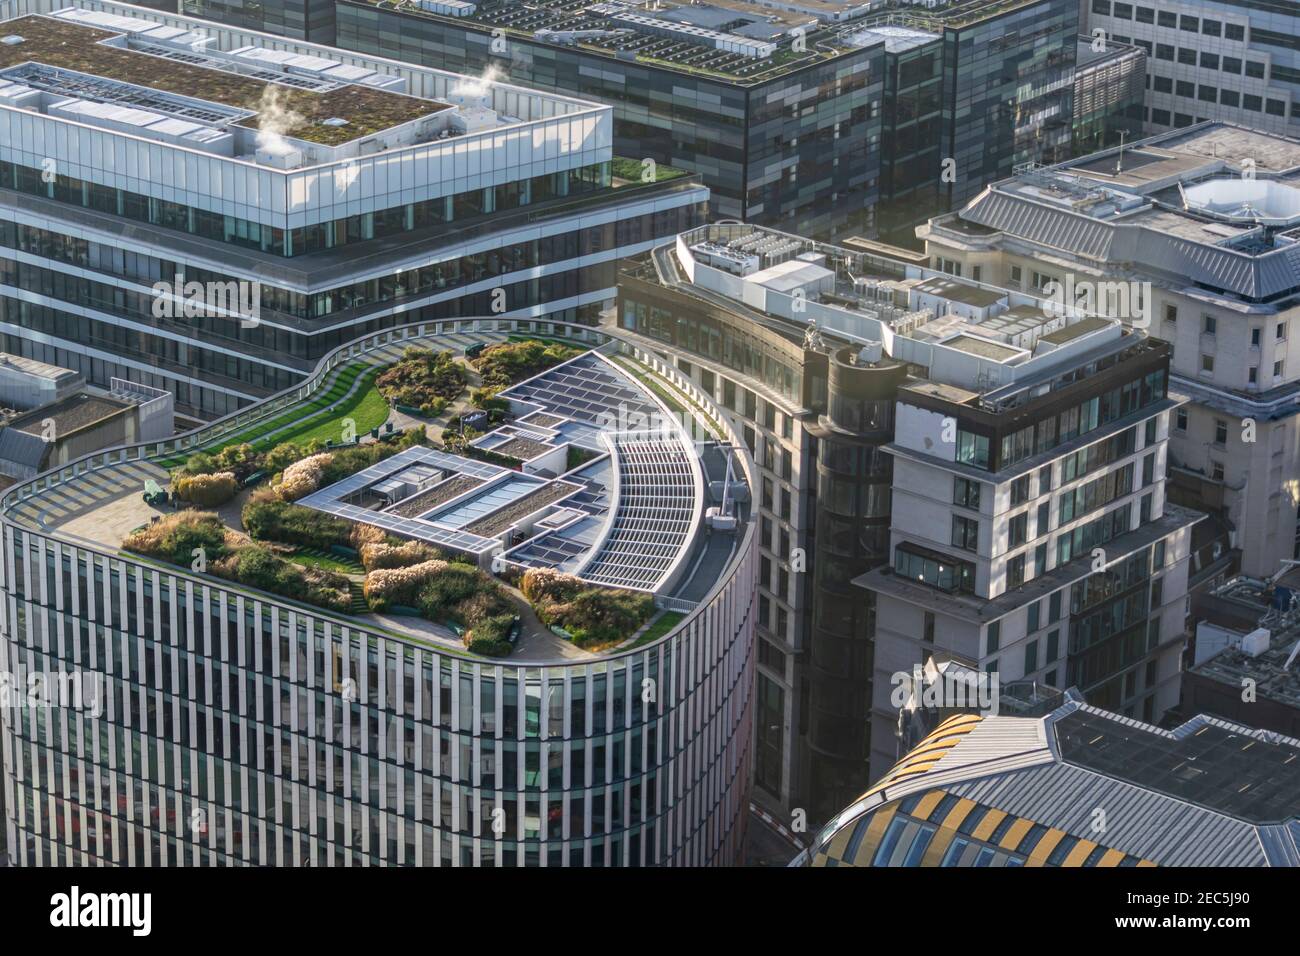 Londra, UK- 15 Dic 2020: Vista dall'alto dell'alto edificio di Wells Fargo con il verde e lussureggiante giardino pensile e pannelli solari a Londra dal re 33 Foto Stock